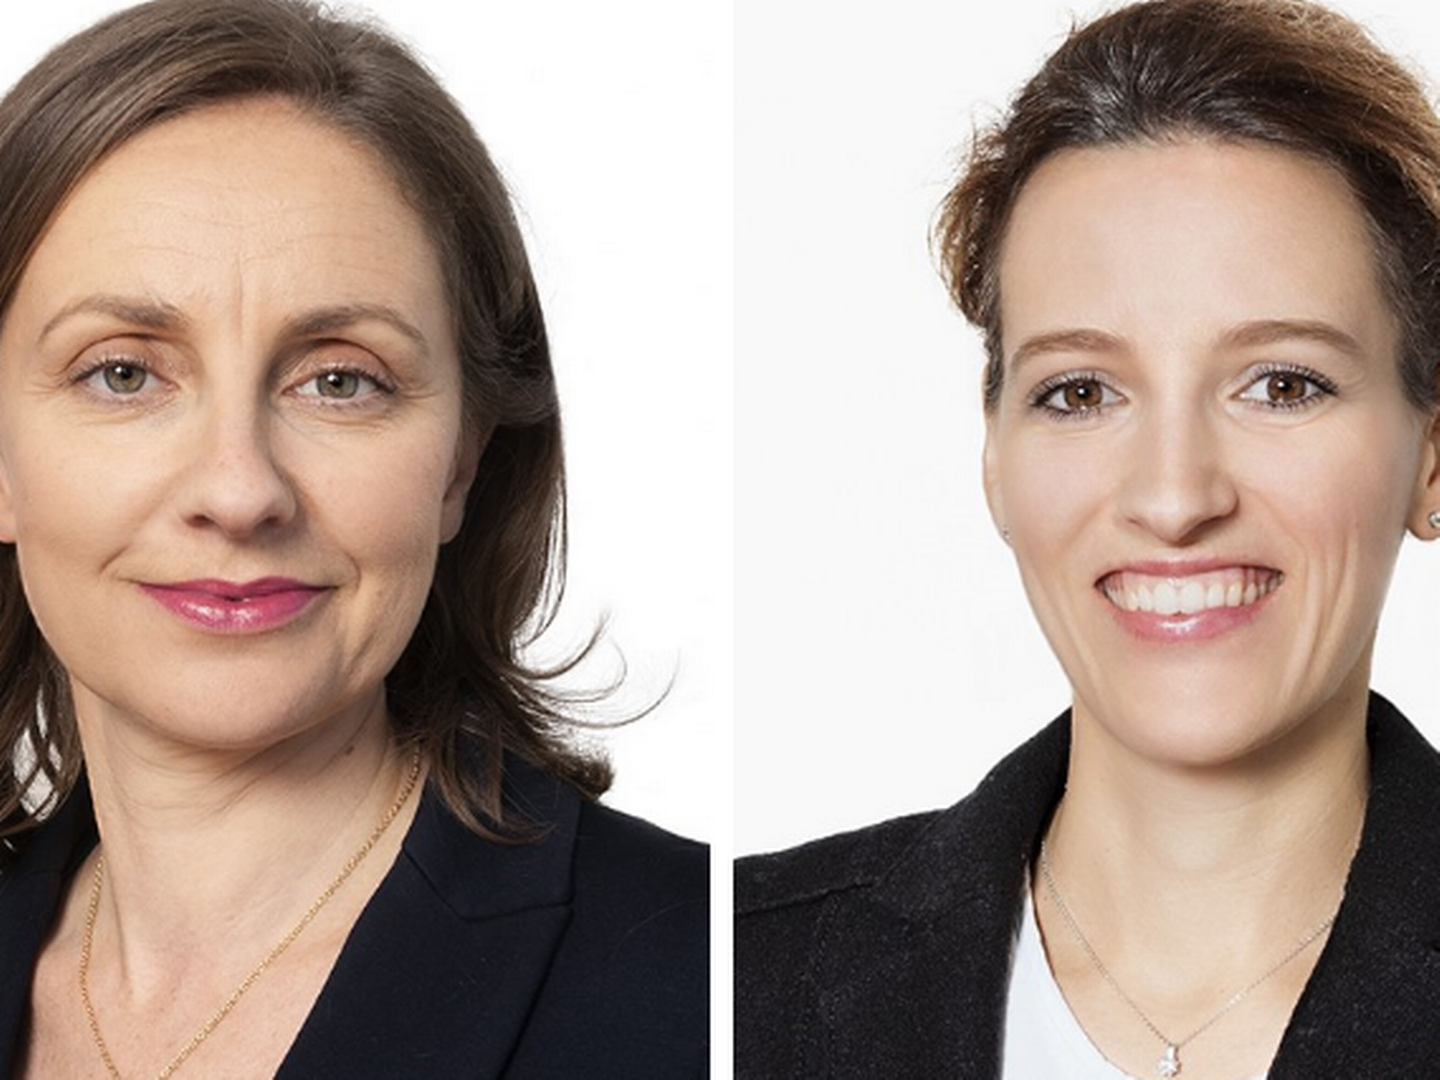 (v.l.) Andrea Bonanni, Partnerin, und Daniela Rindone, Counsel, von CMS Deutschland. | Foto: CMS Deutschland